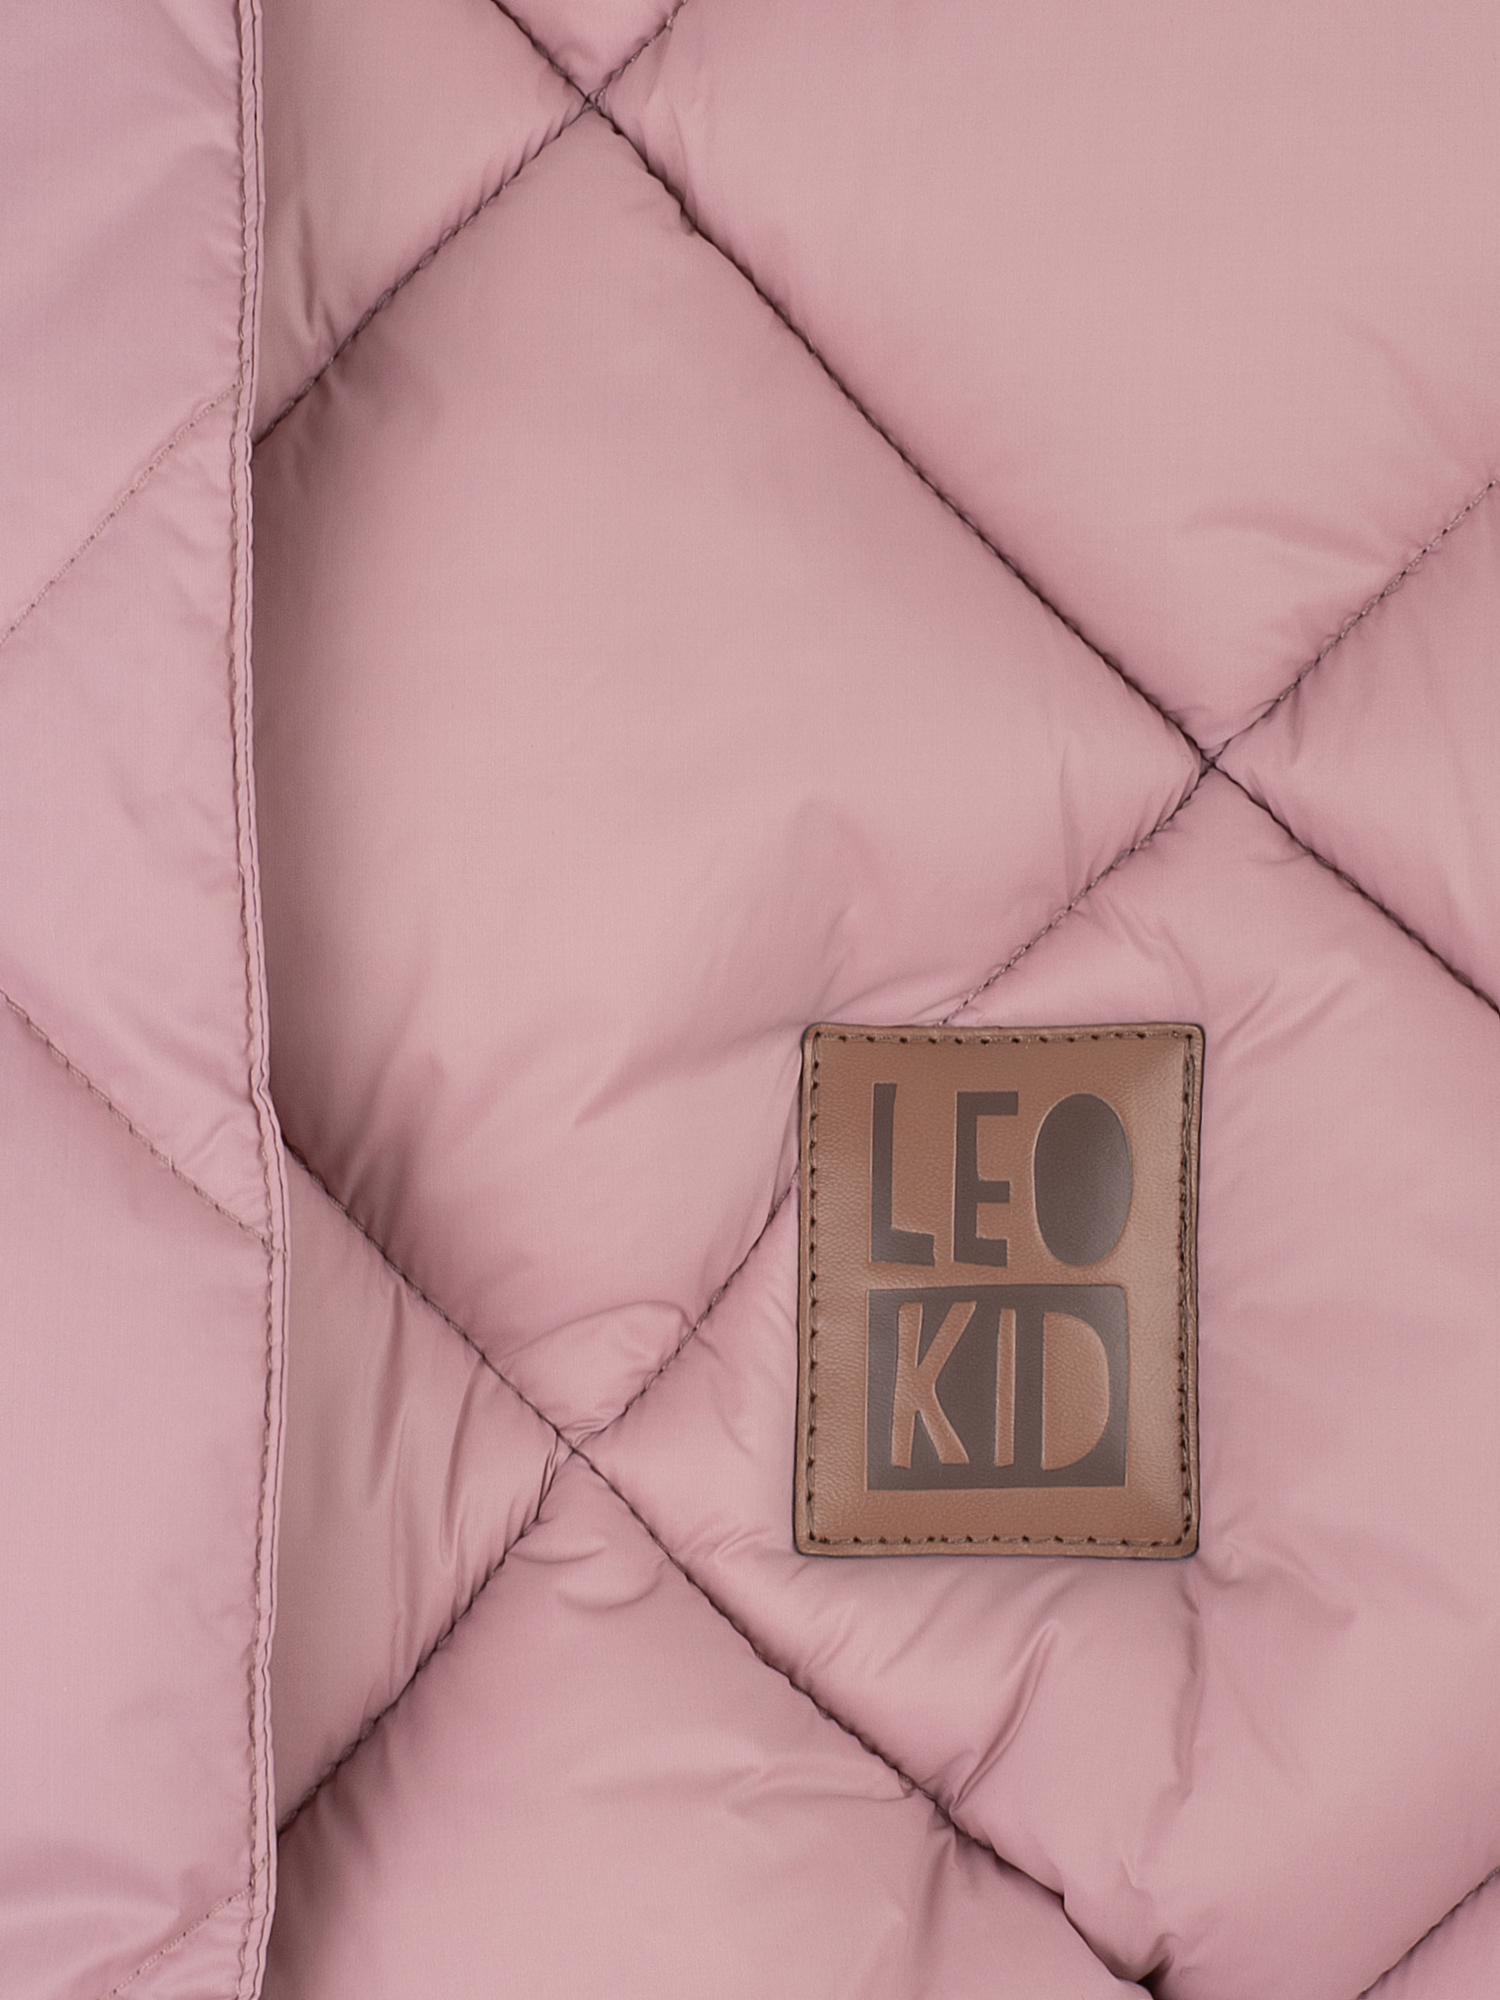 Конверт Leokid Light Compact для автолюльки и коляски Soft pink. Фото №4